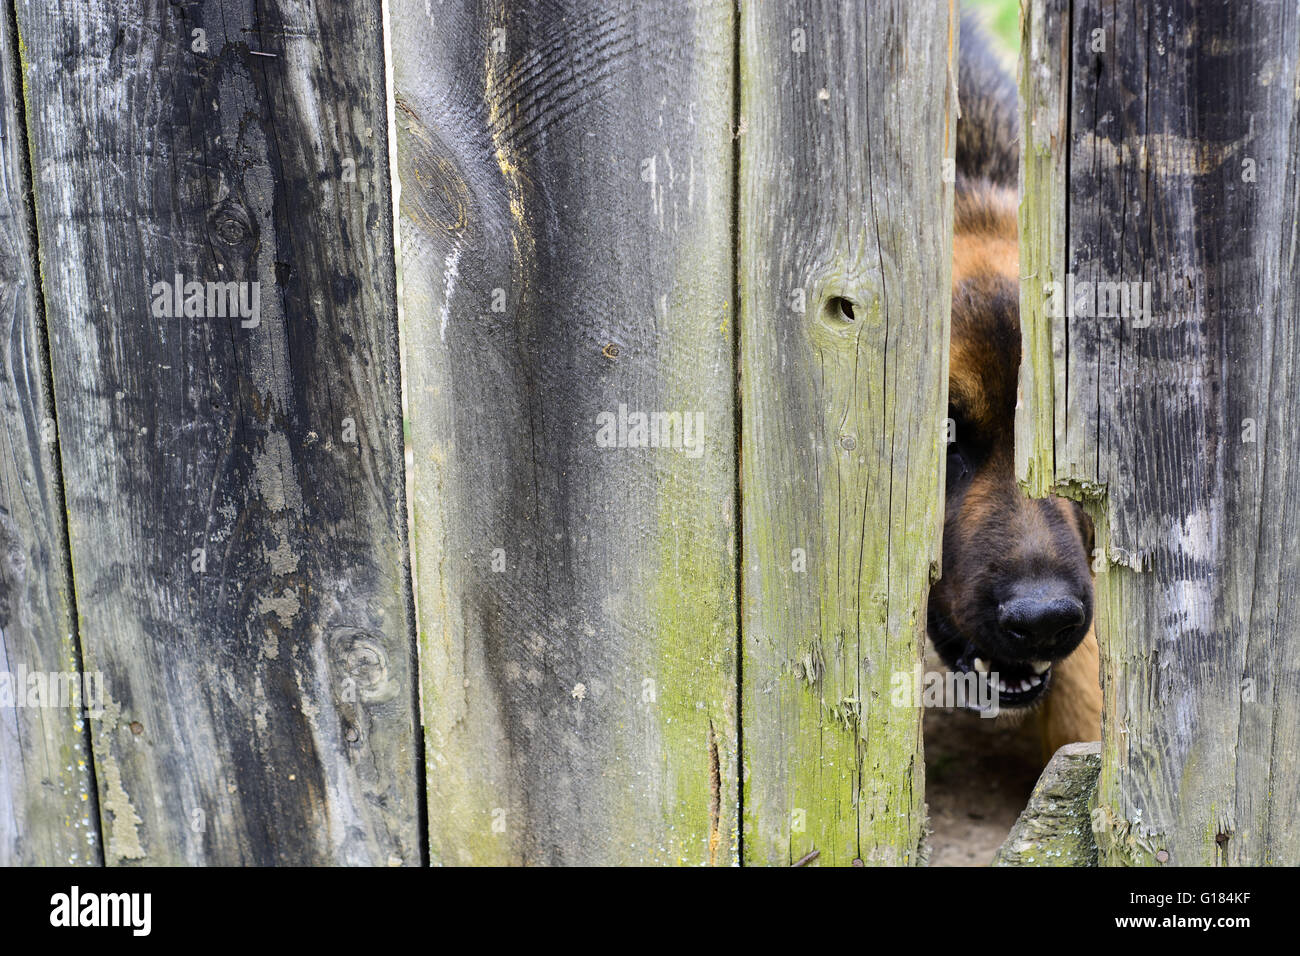 La nariz del perro enojado que protruye a través de un agujero en una valla de madera vieja Foto de stock